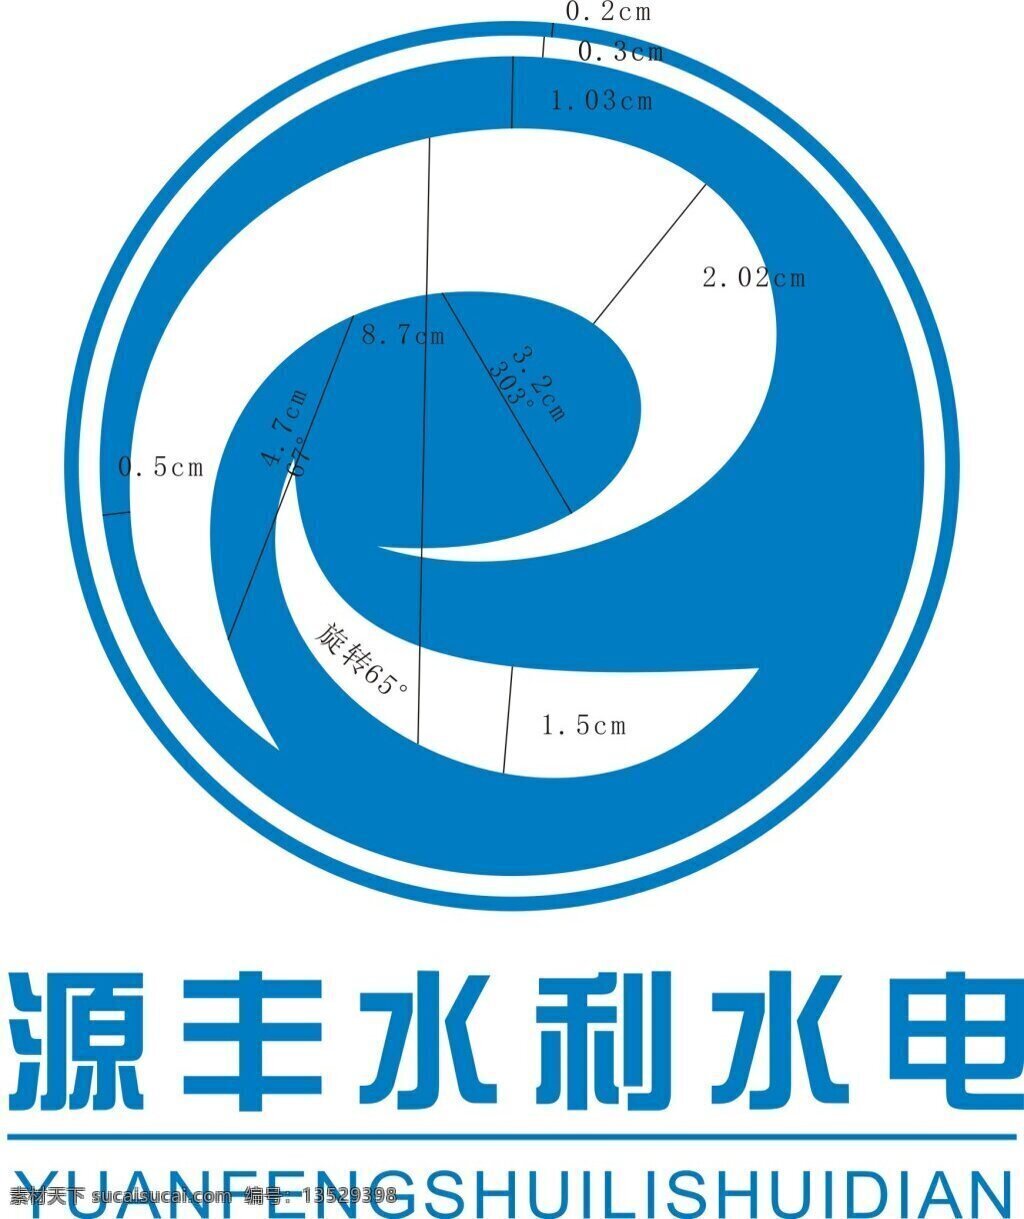 公司 简约 logo 标志 e电器 大气 科技 蓝天 美观 企业 企业文化 水利